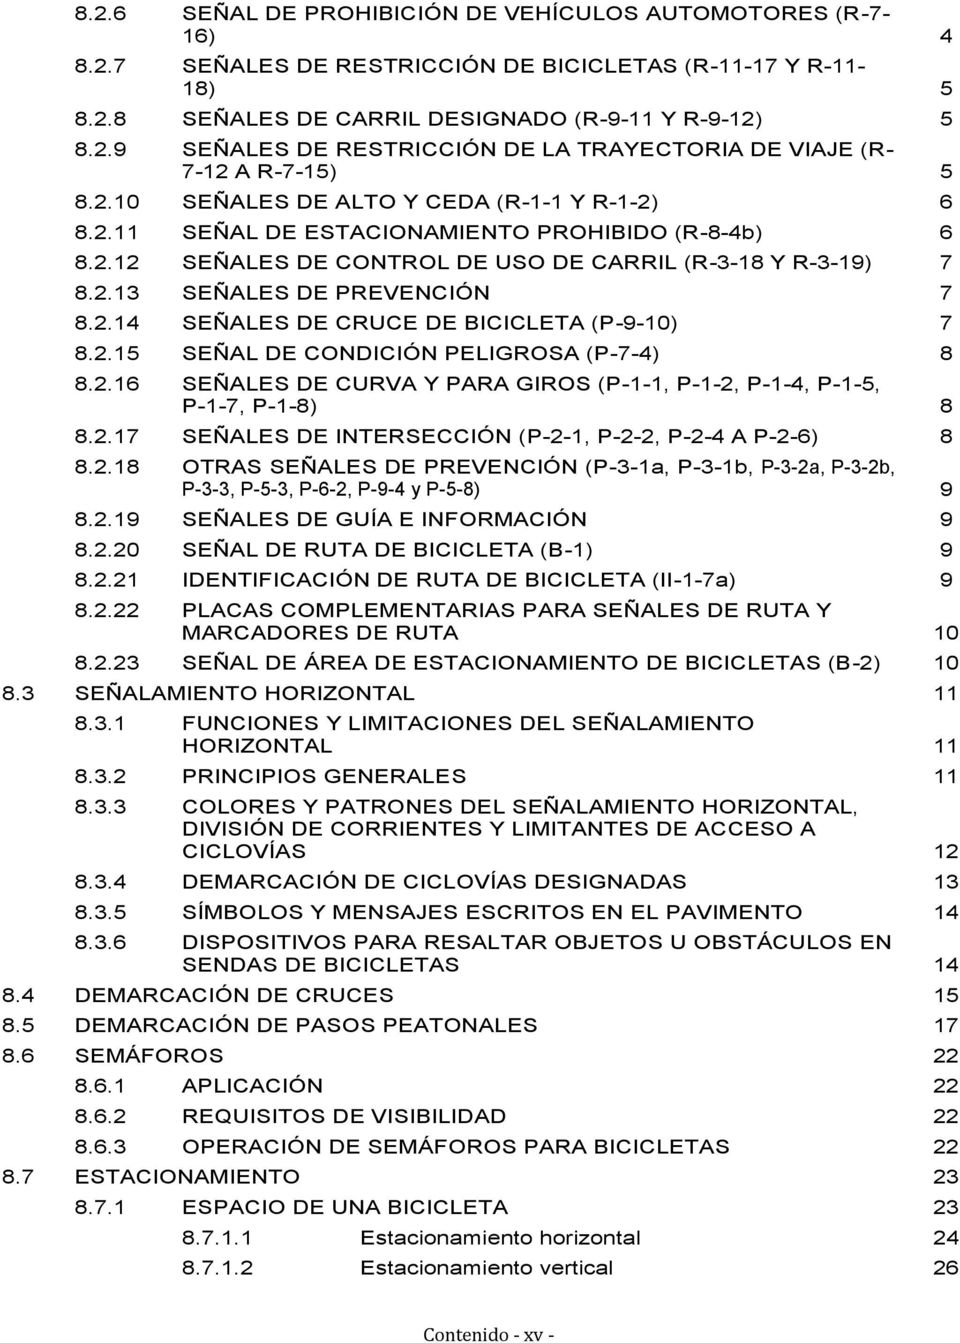 2.15 SEÑAL DE CONDICIÓN PELIGROSA (P-7-4) 8 8.2.16 SEÑALES DE CURVA Y PARA GIROS (P-1-1, P-1-2, P-1-4, P-1-5, P-1-7, P-1-8) 8 8.2.17 SEÑALES DE INTERSECCIÓN (P-2-1, P-2-2, P-2-4 A P-2-6) 8 8.2.18 OTRAS SEÑALES DE PREVENCIÓN (P-3-1a, P-3-1b, P-3-2a, P-3-2b, P-3-3, P-5-3, P-6-2, P-9-4 y P-5-8) 9 8.